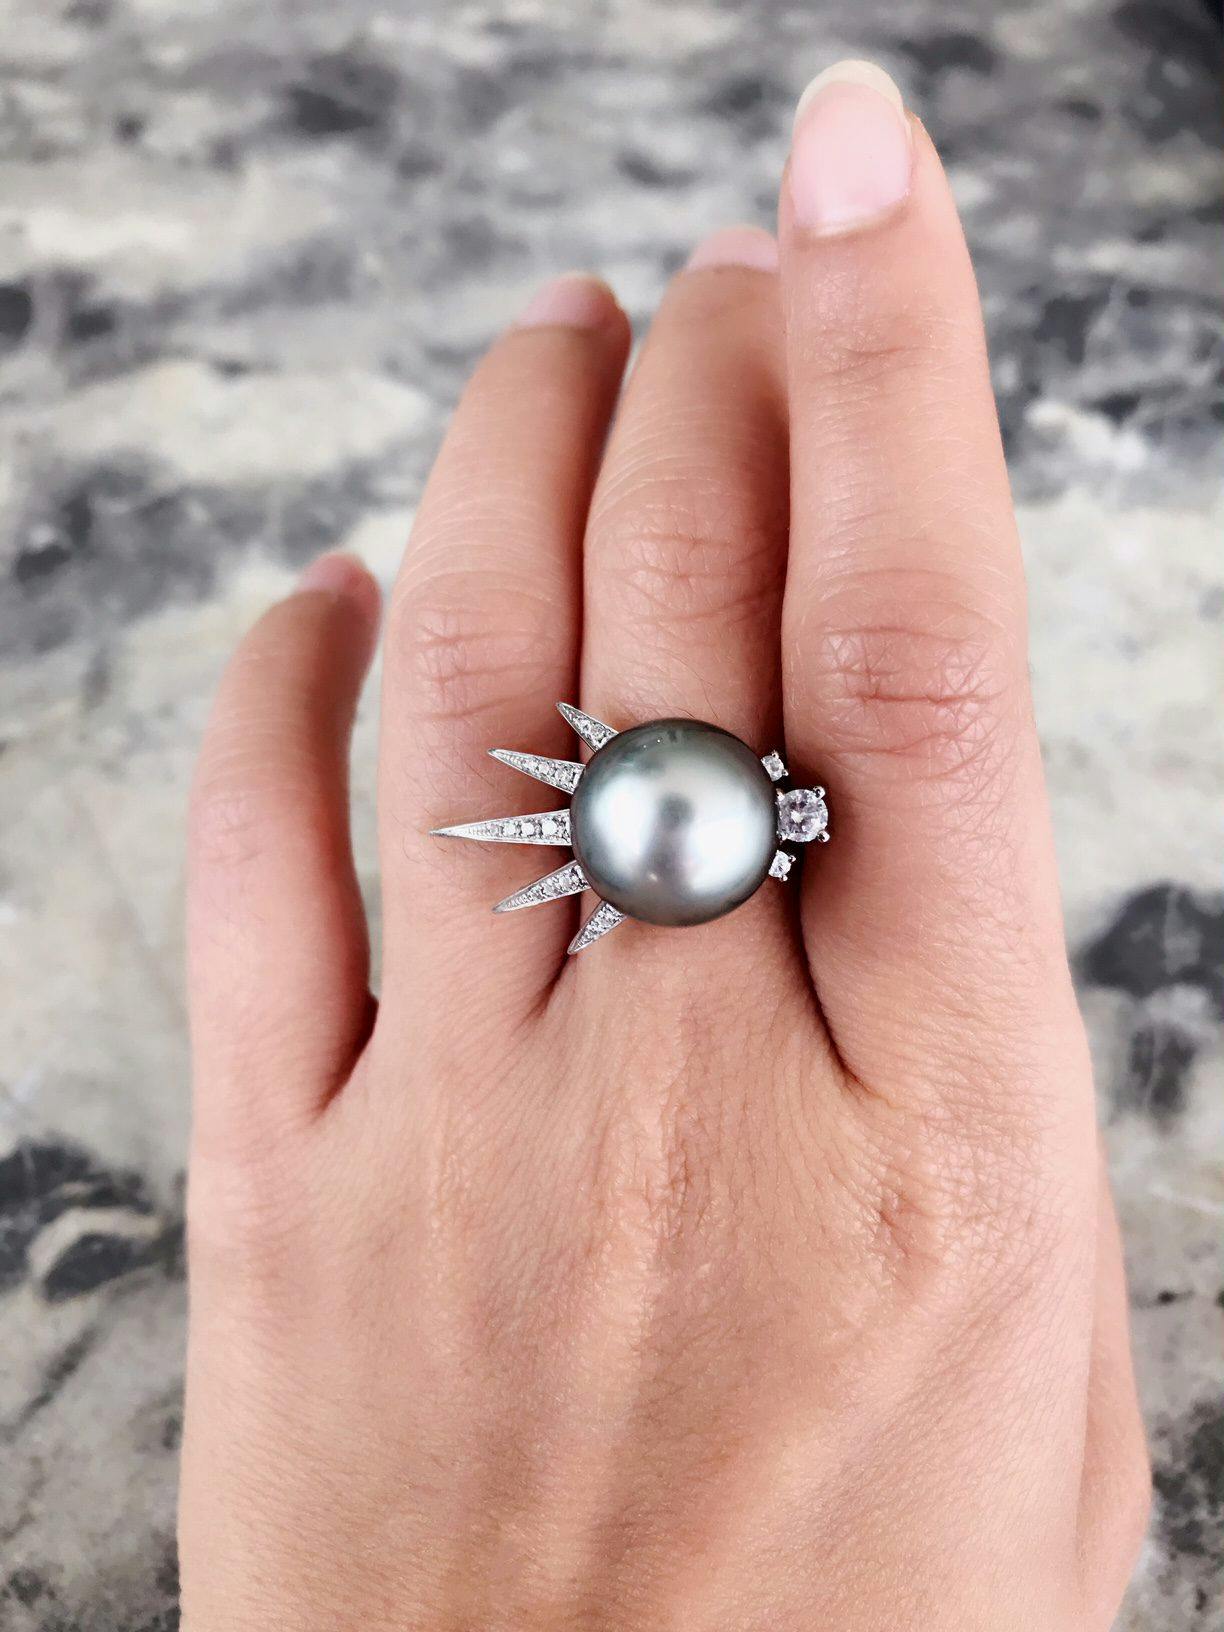 Tahitian ring - pearl engagement ring stones